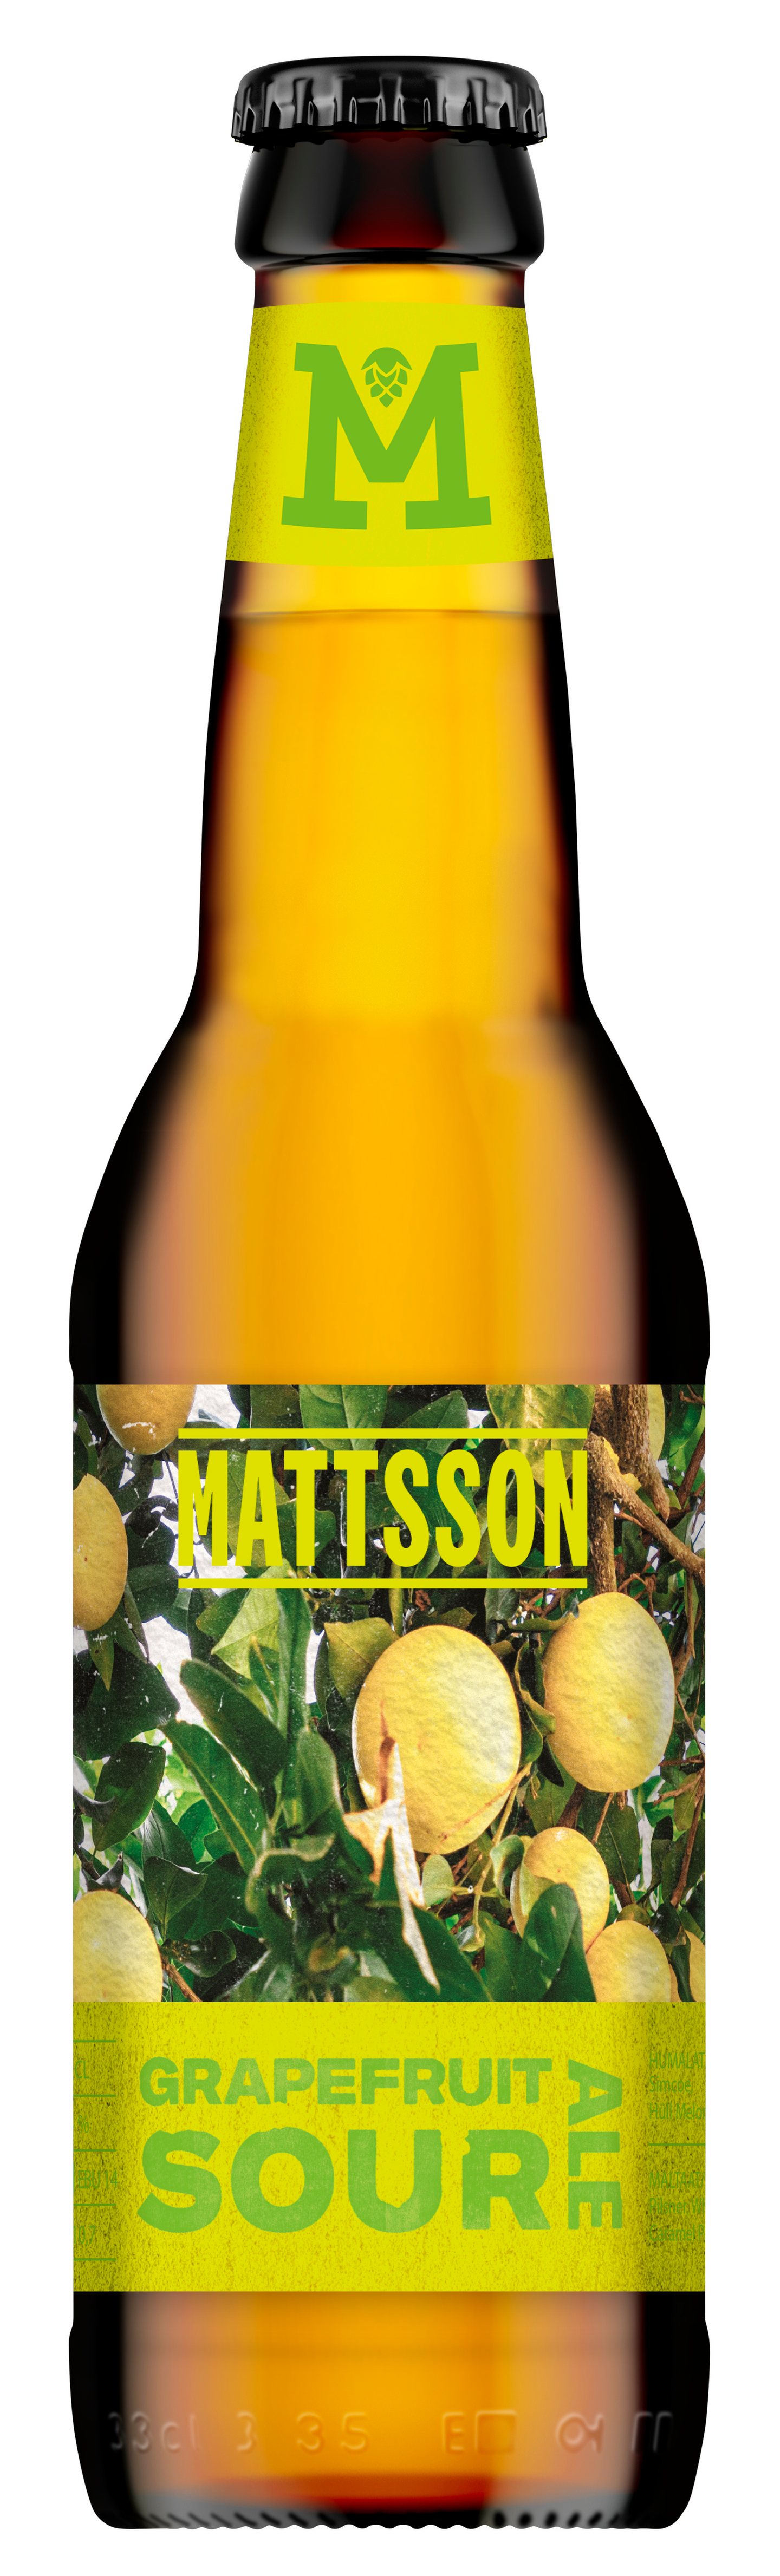 Mattsson Grapefruit Sour Ale 4,4% 0,33l